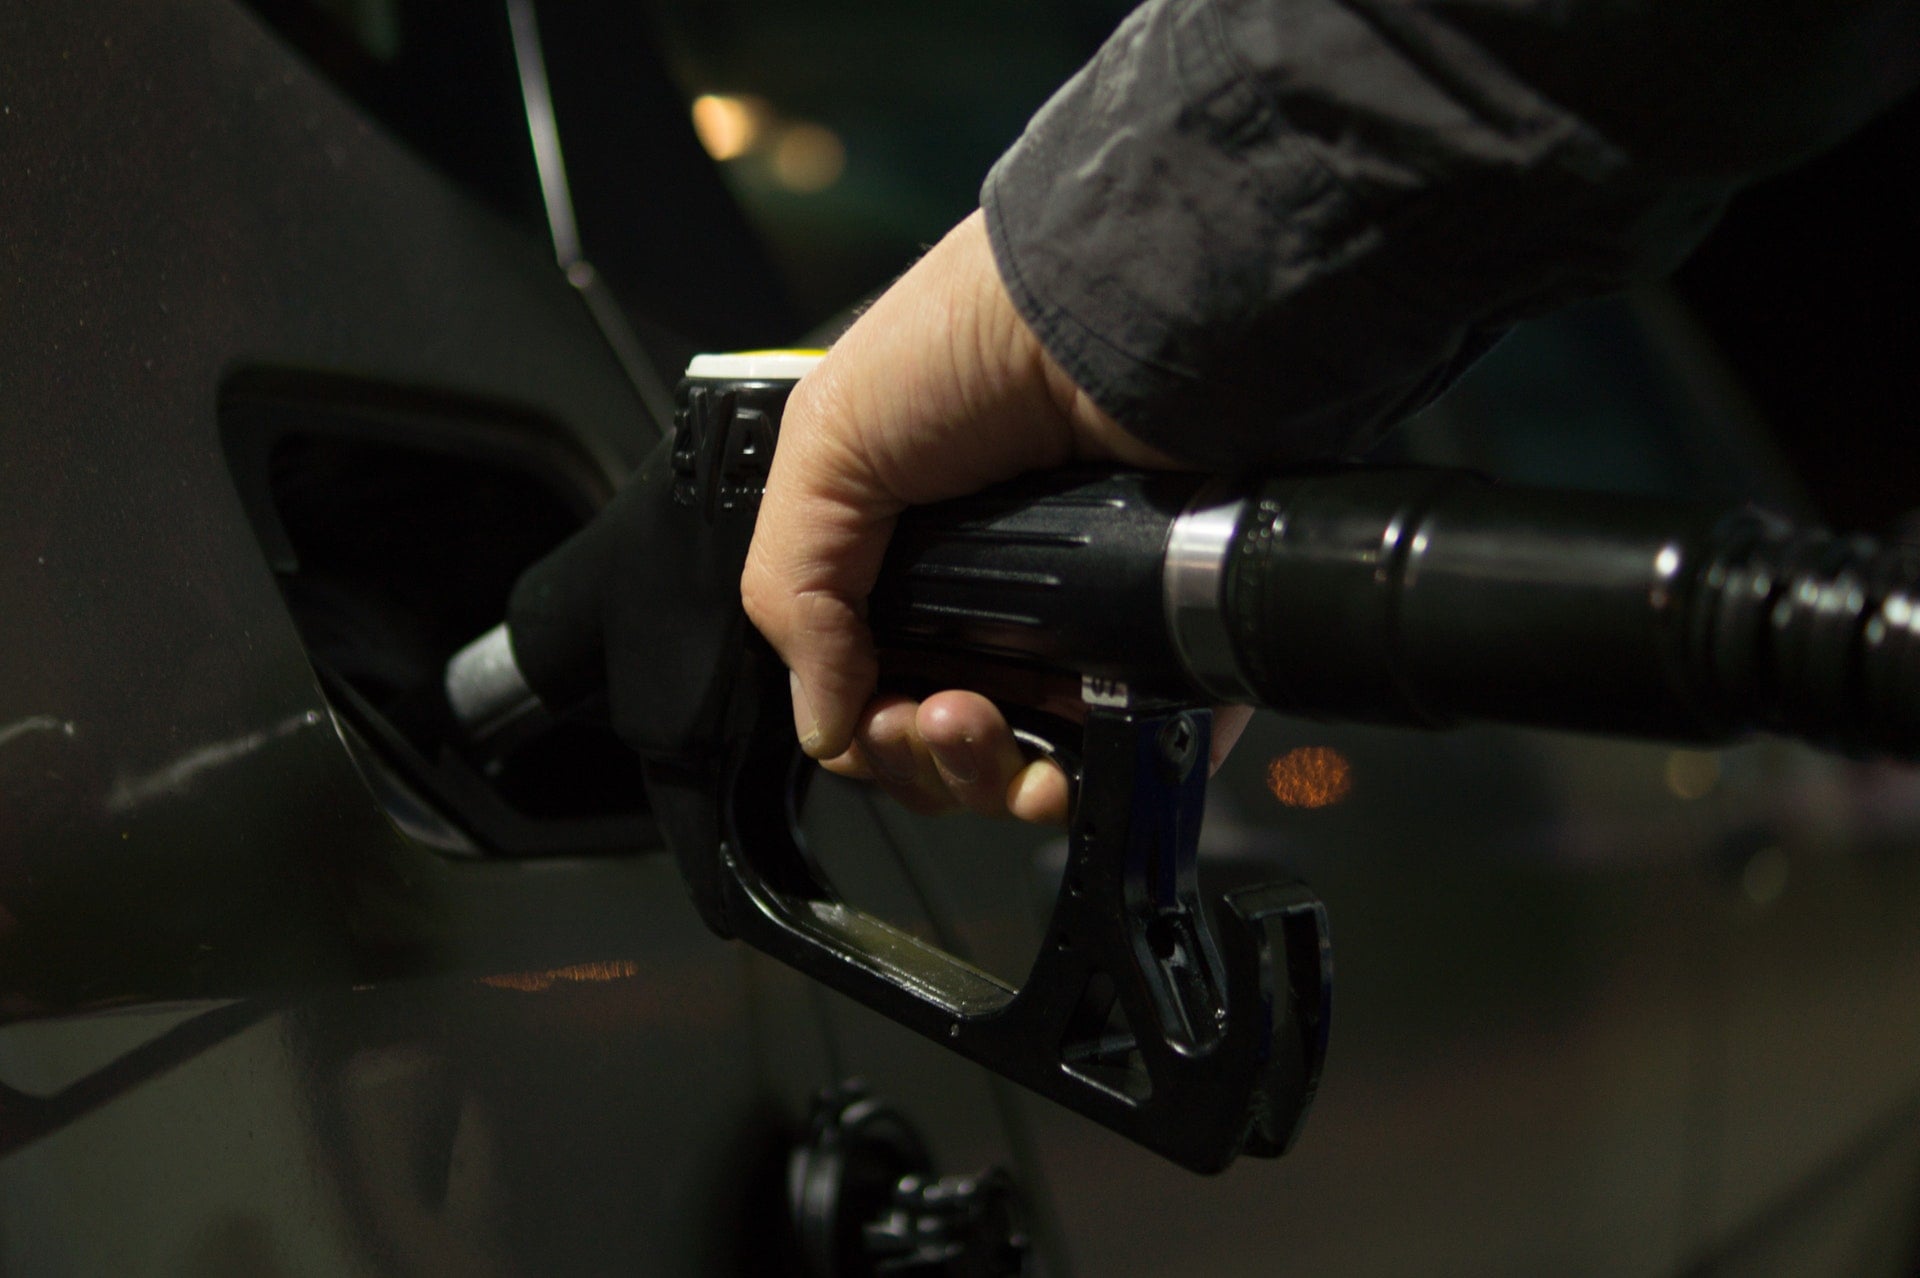 中油、台塑化汽油、柴油 ⛽️ 浮動油價最新價格資訊（2020.8.17~8.24）